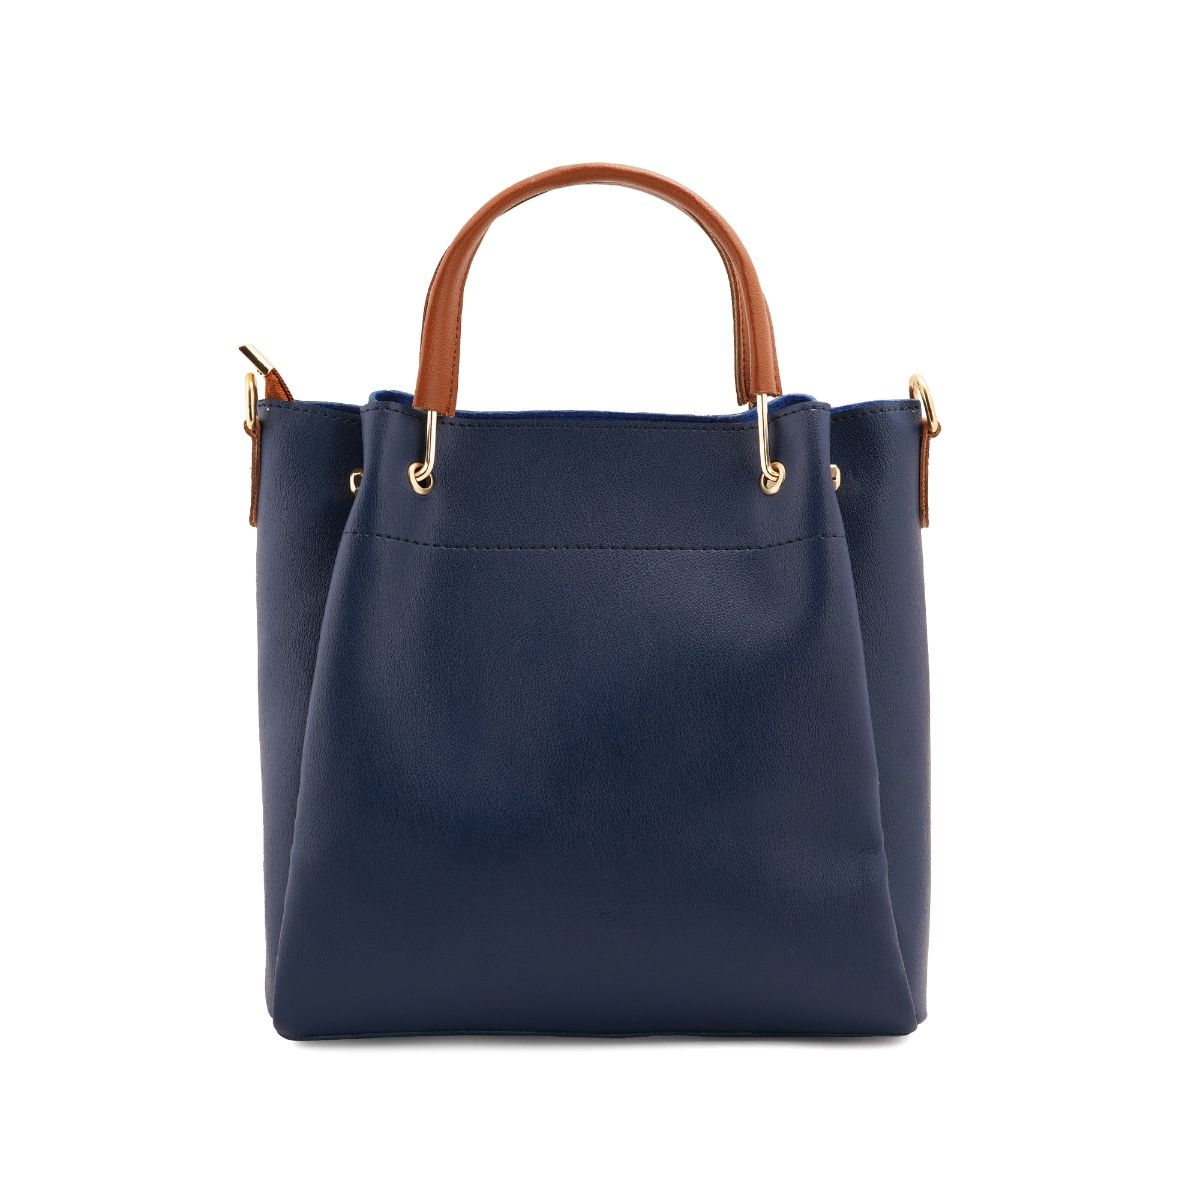 Lapis O Lupo Women Handbag and Sling Bag Combo (Set of 2): Buy Lapis O ...